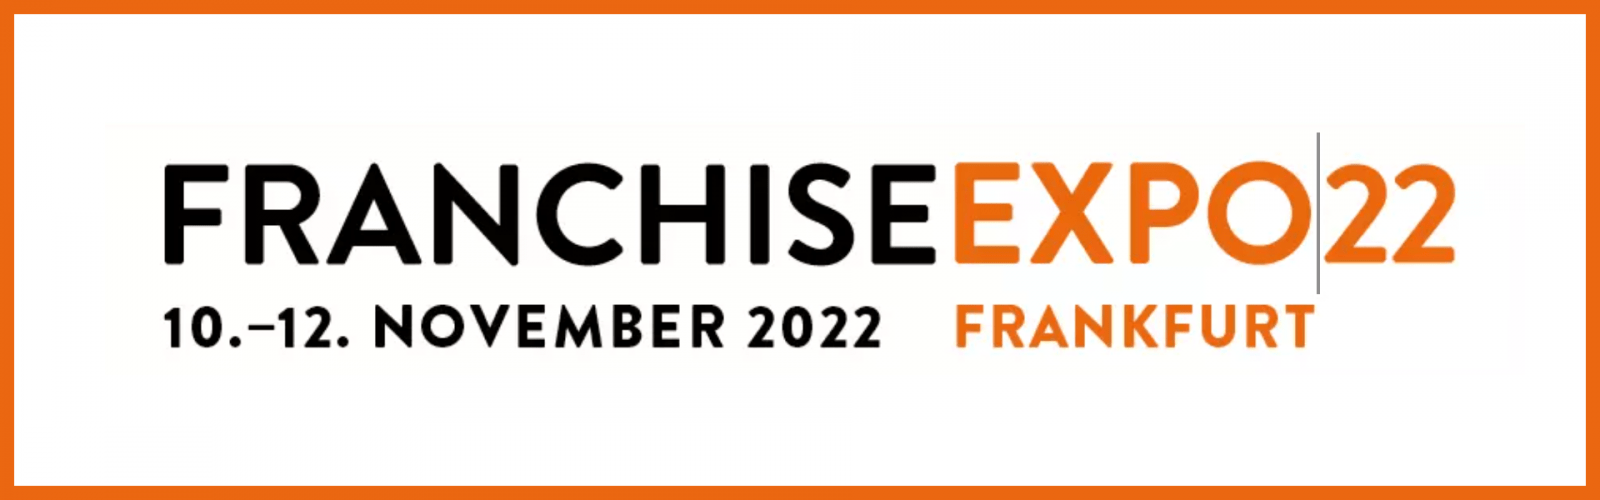 Franchise-Expo Logo 2022